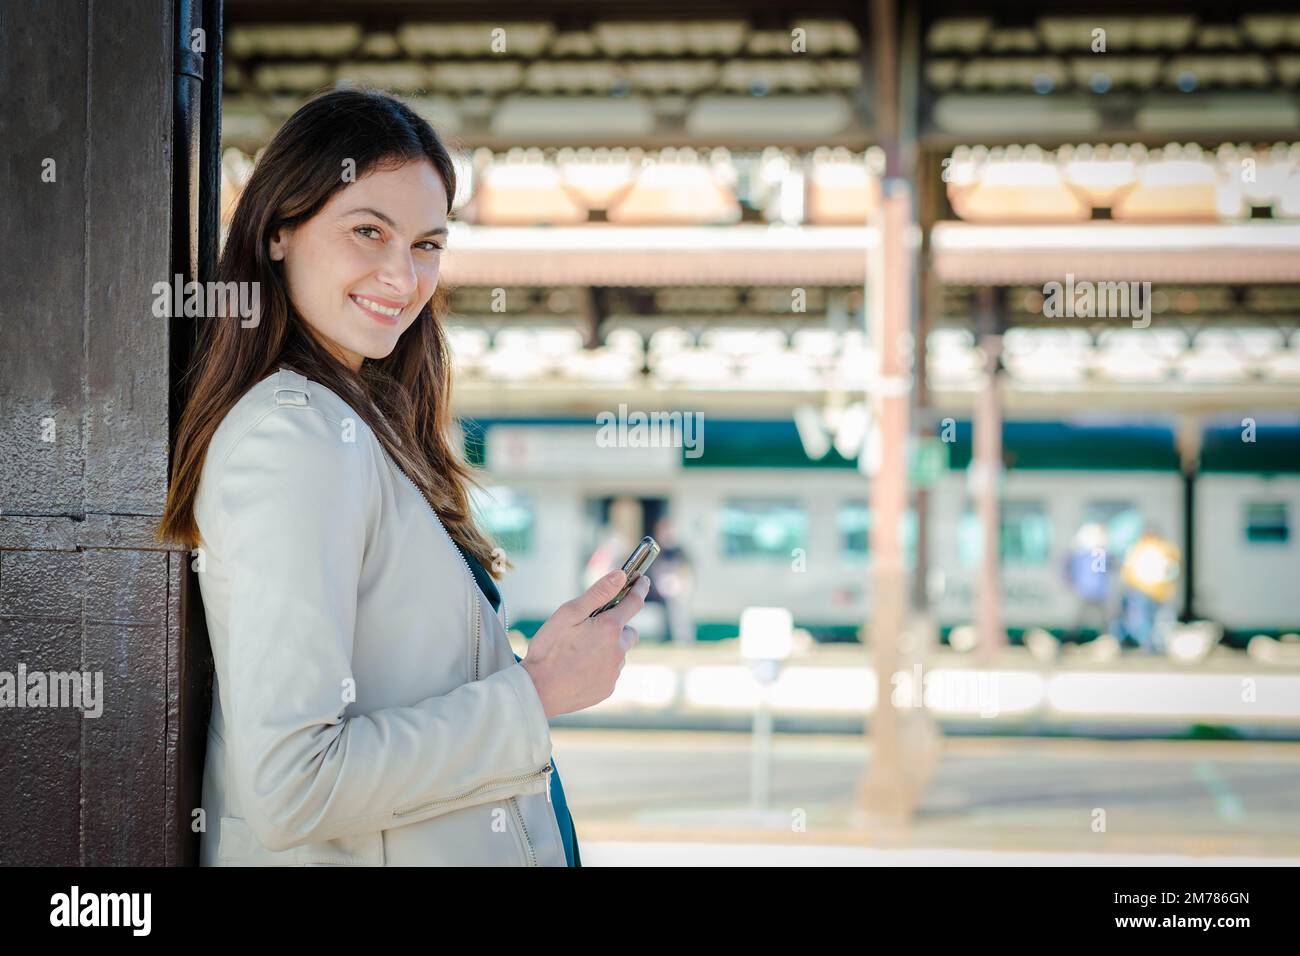 Femme d'affaires souriante utilisant un smartphone en attendant dans une gare - jeune fille étudiante attrayante utilisant le téléphone portable en position debout Banque D'Images